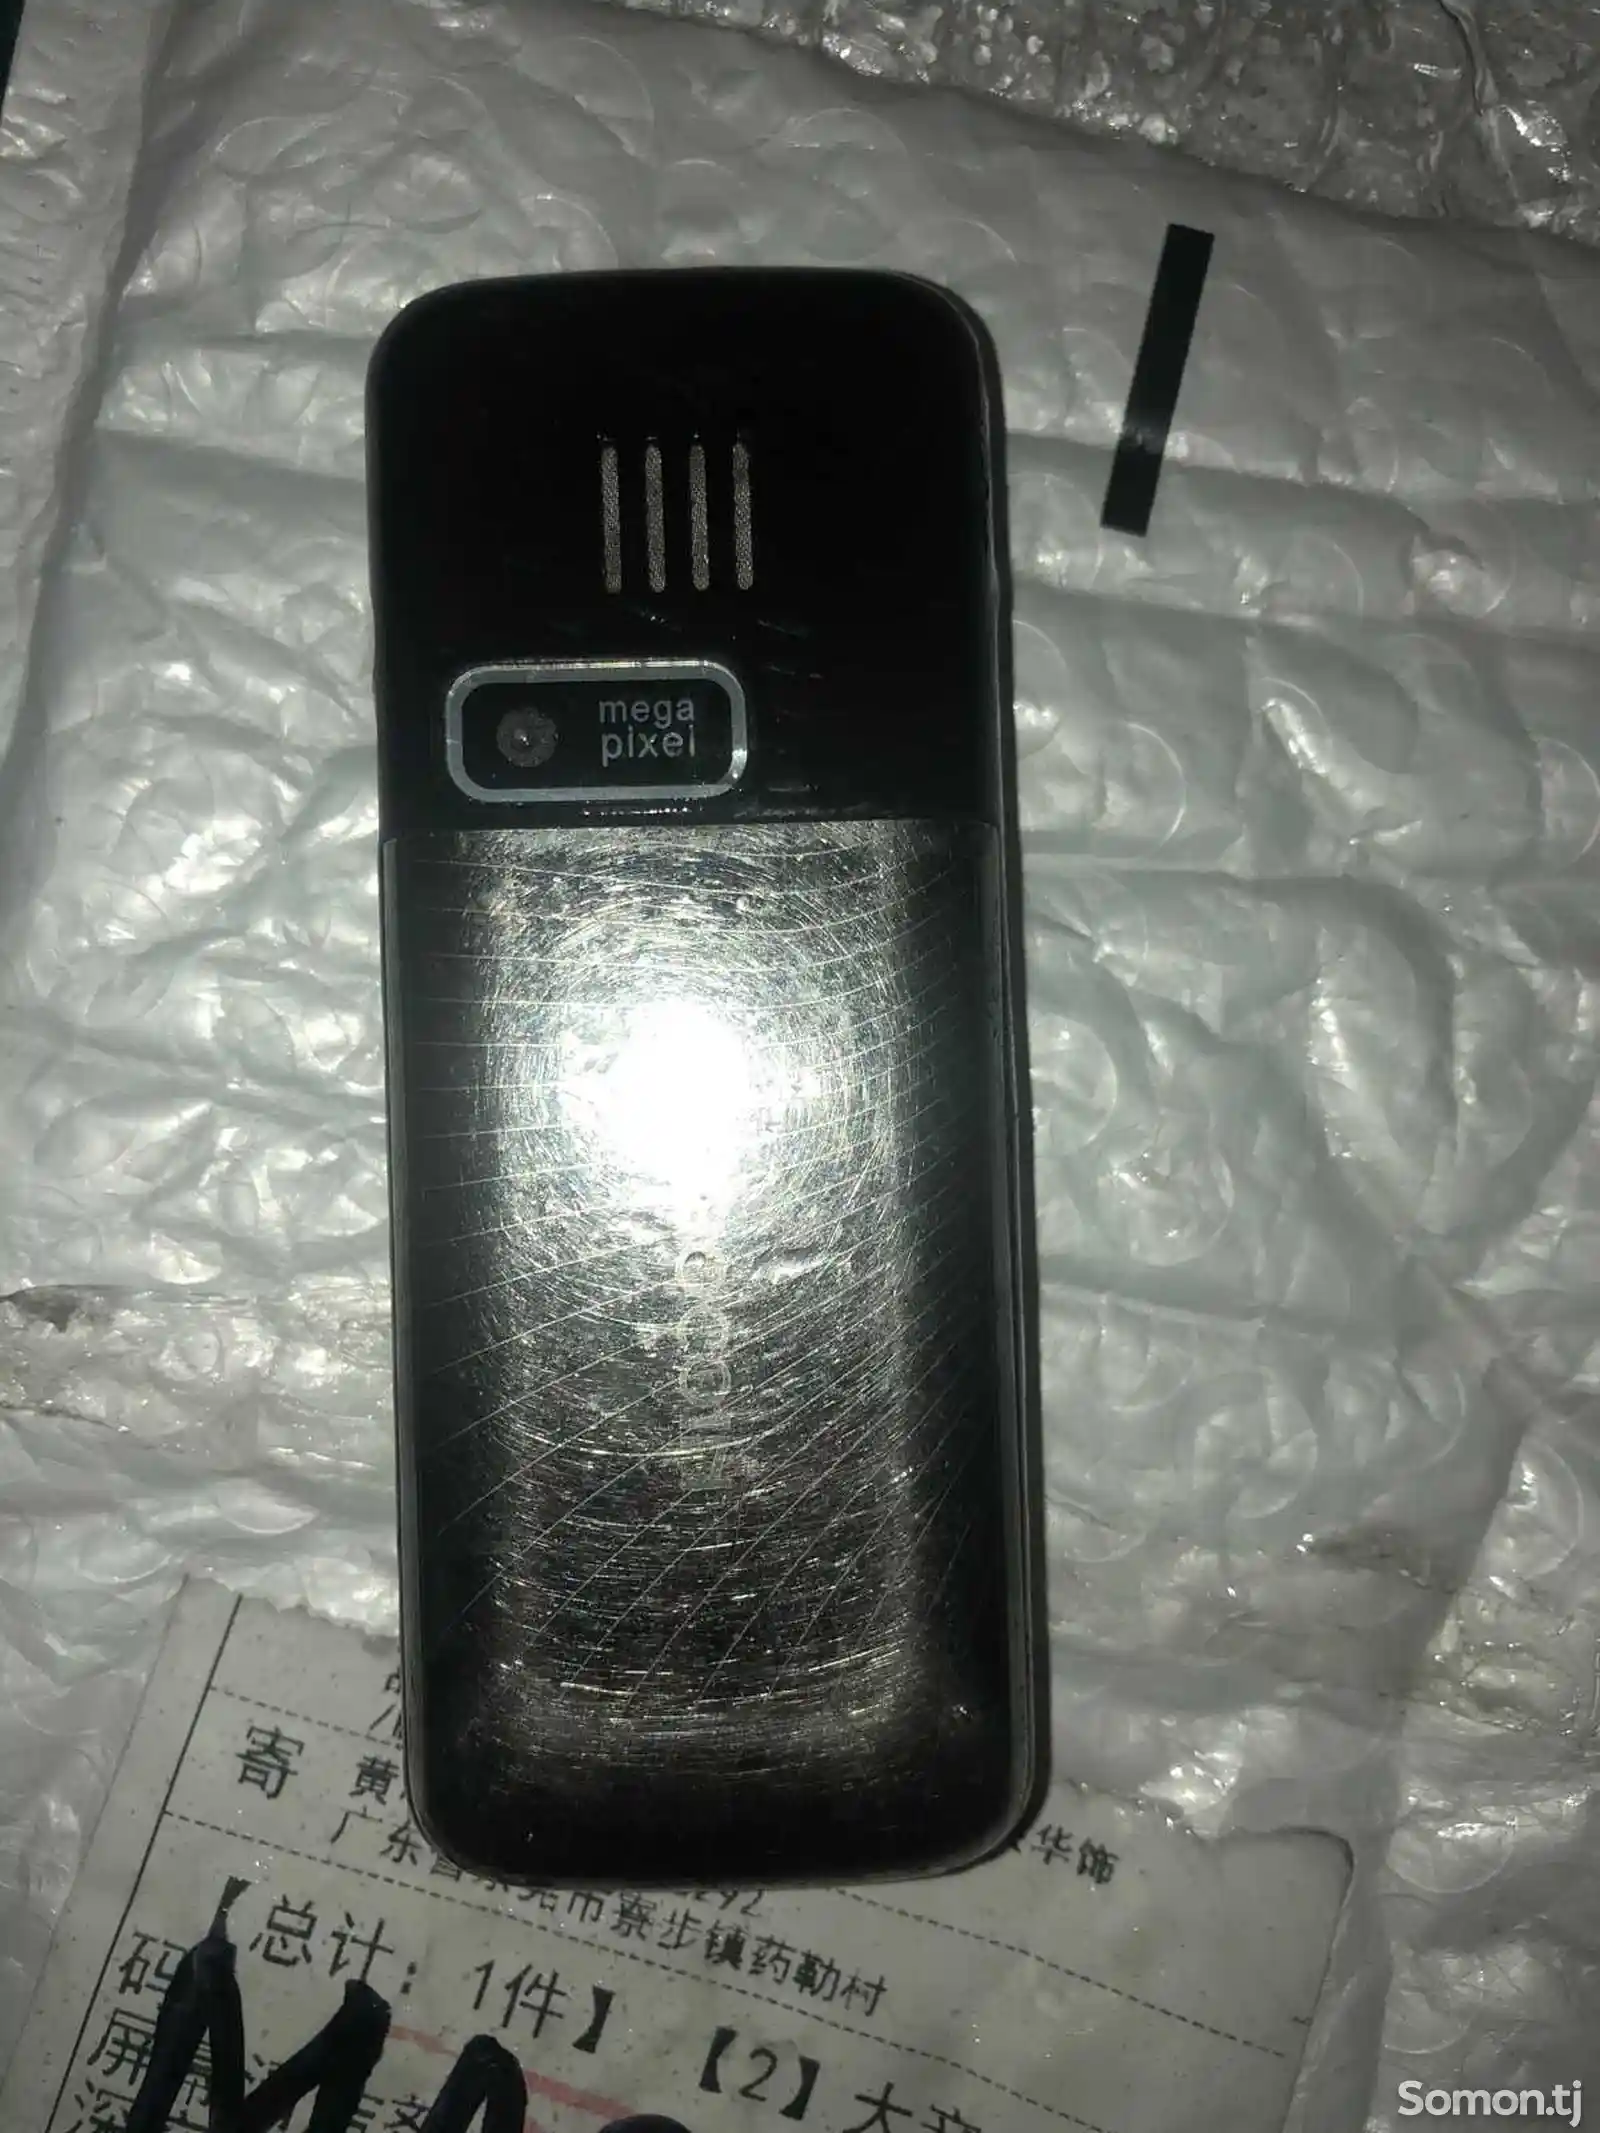 Телефон Nokia-5